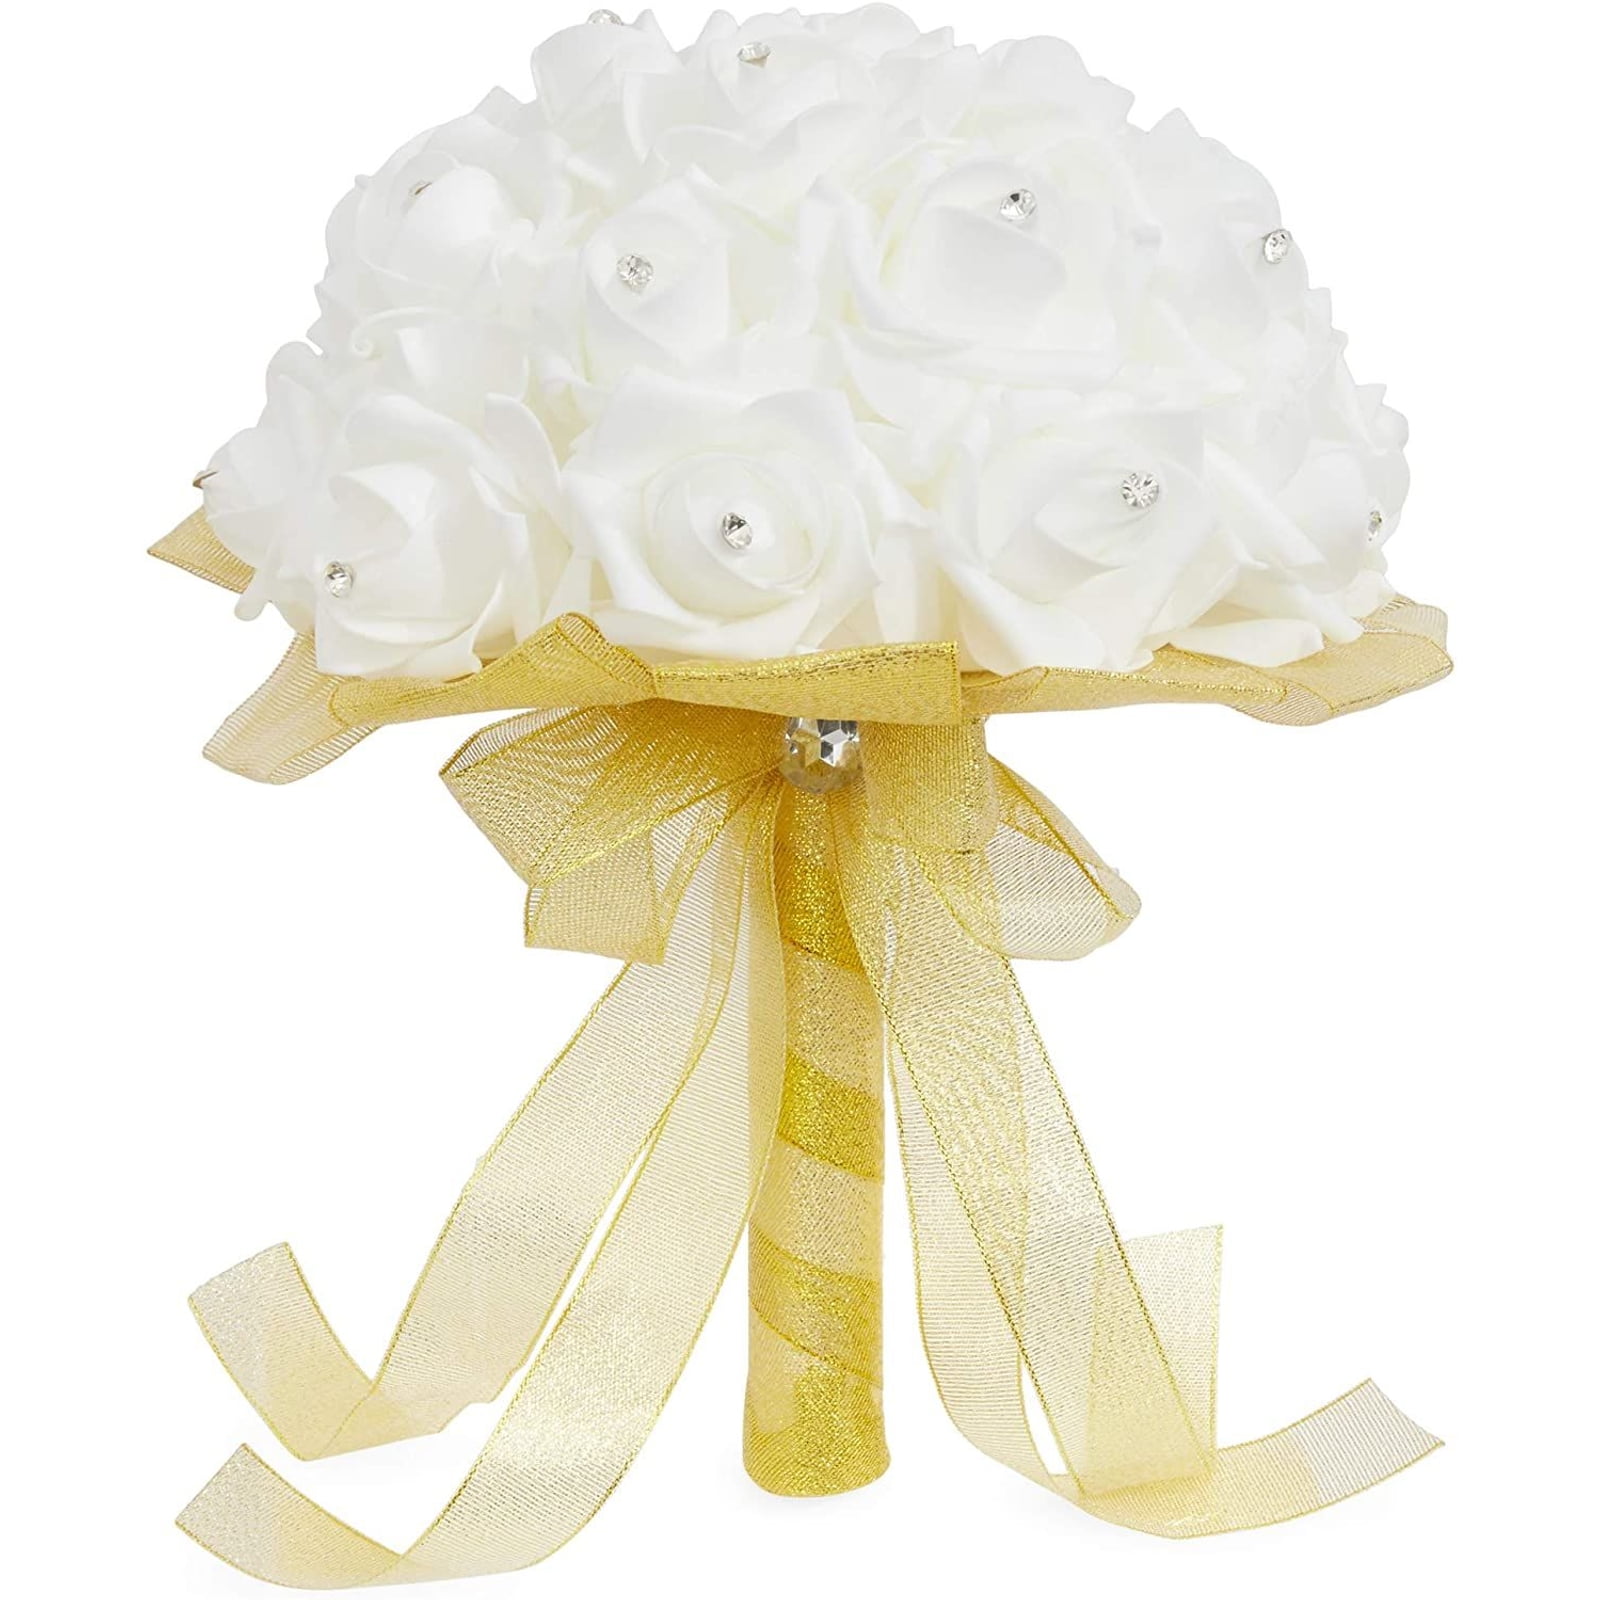 Foam Bouquet Handle Bridal Wedding Flower Holder Decoration With Lace Trim VAUS 